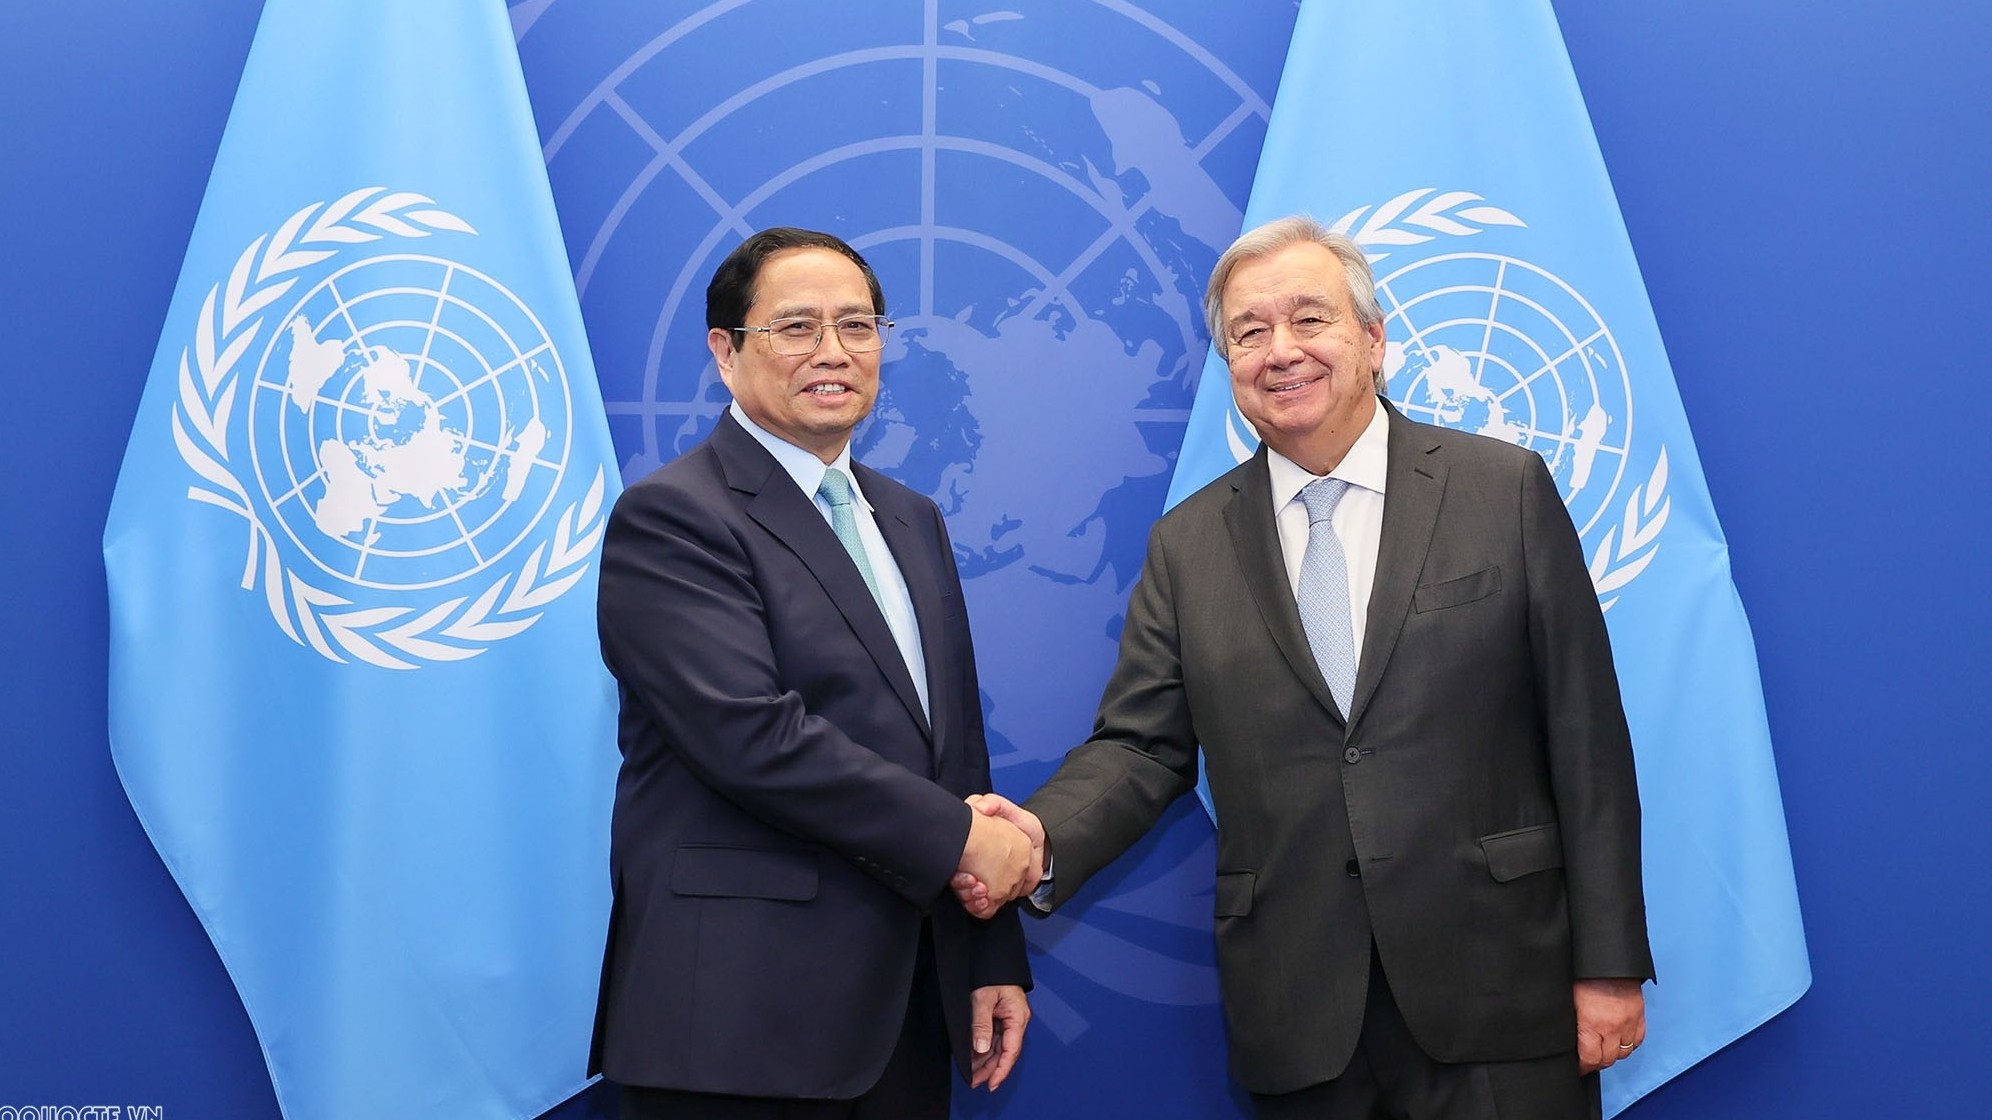 Tổng thư ký Antonio Guterres cảm ơn sự hợp tác và ủng hộ tuyệt vời của Việt Nam đối với Liên hợp quốc